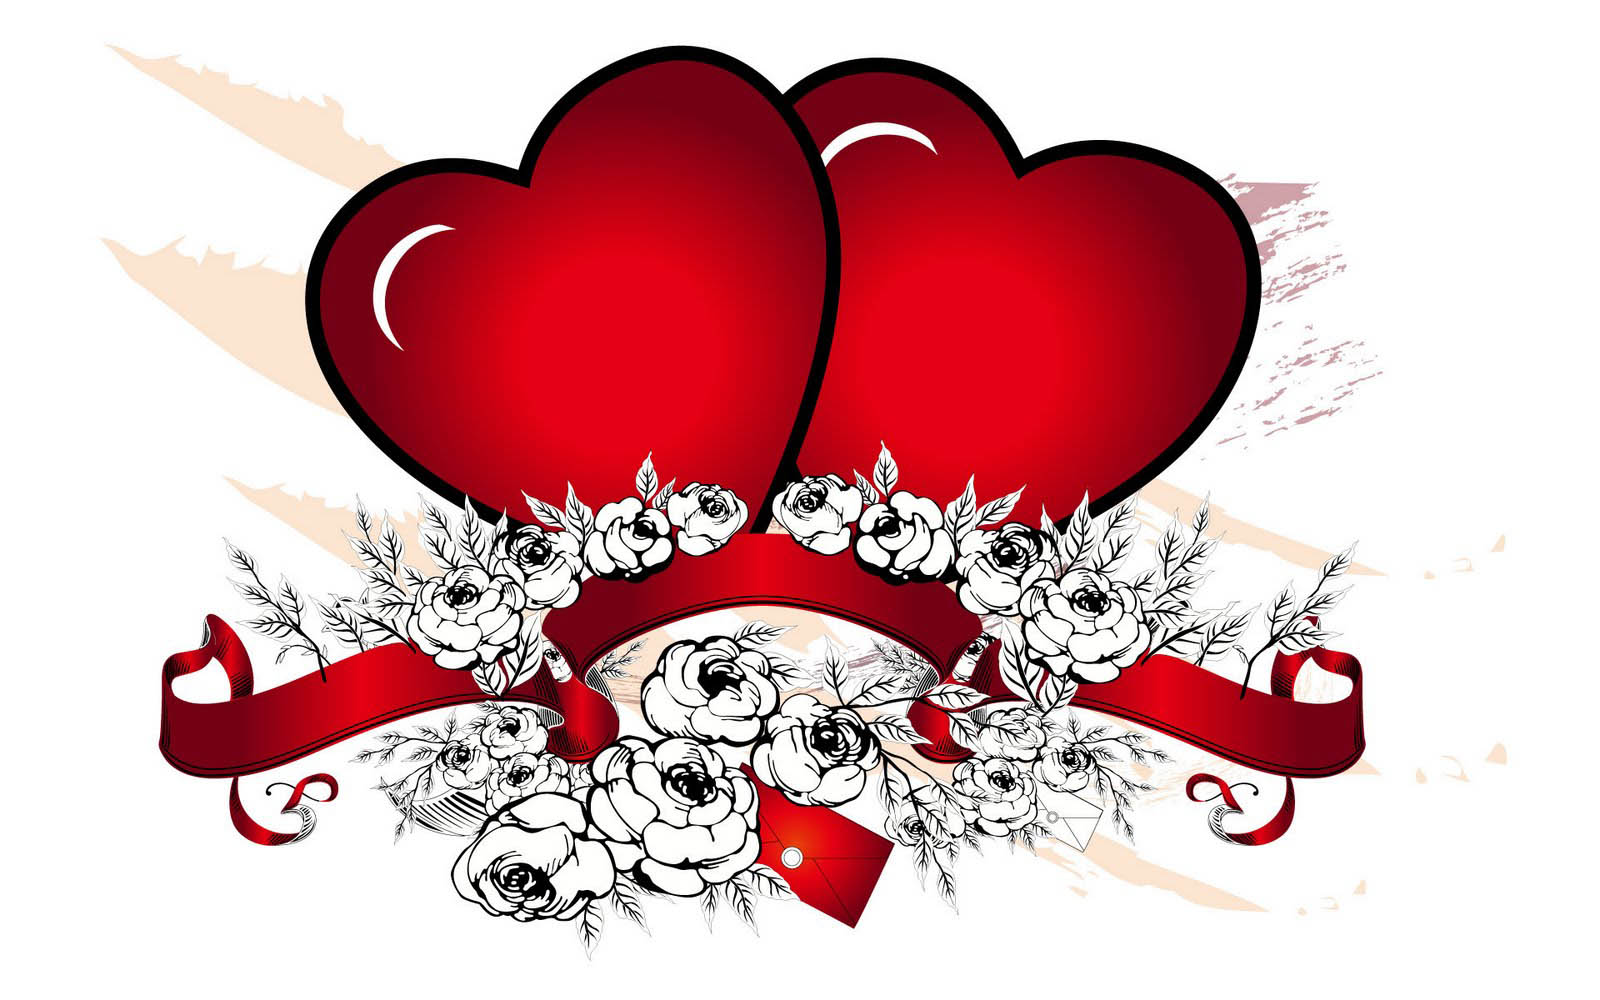 愛の心の壁紙,心臓,赤,愛,バレンタイン・デー,心臓